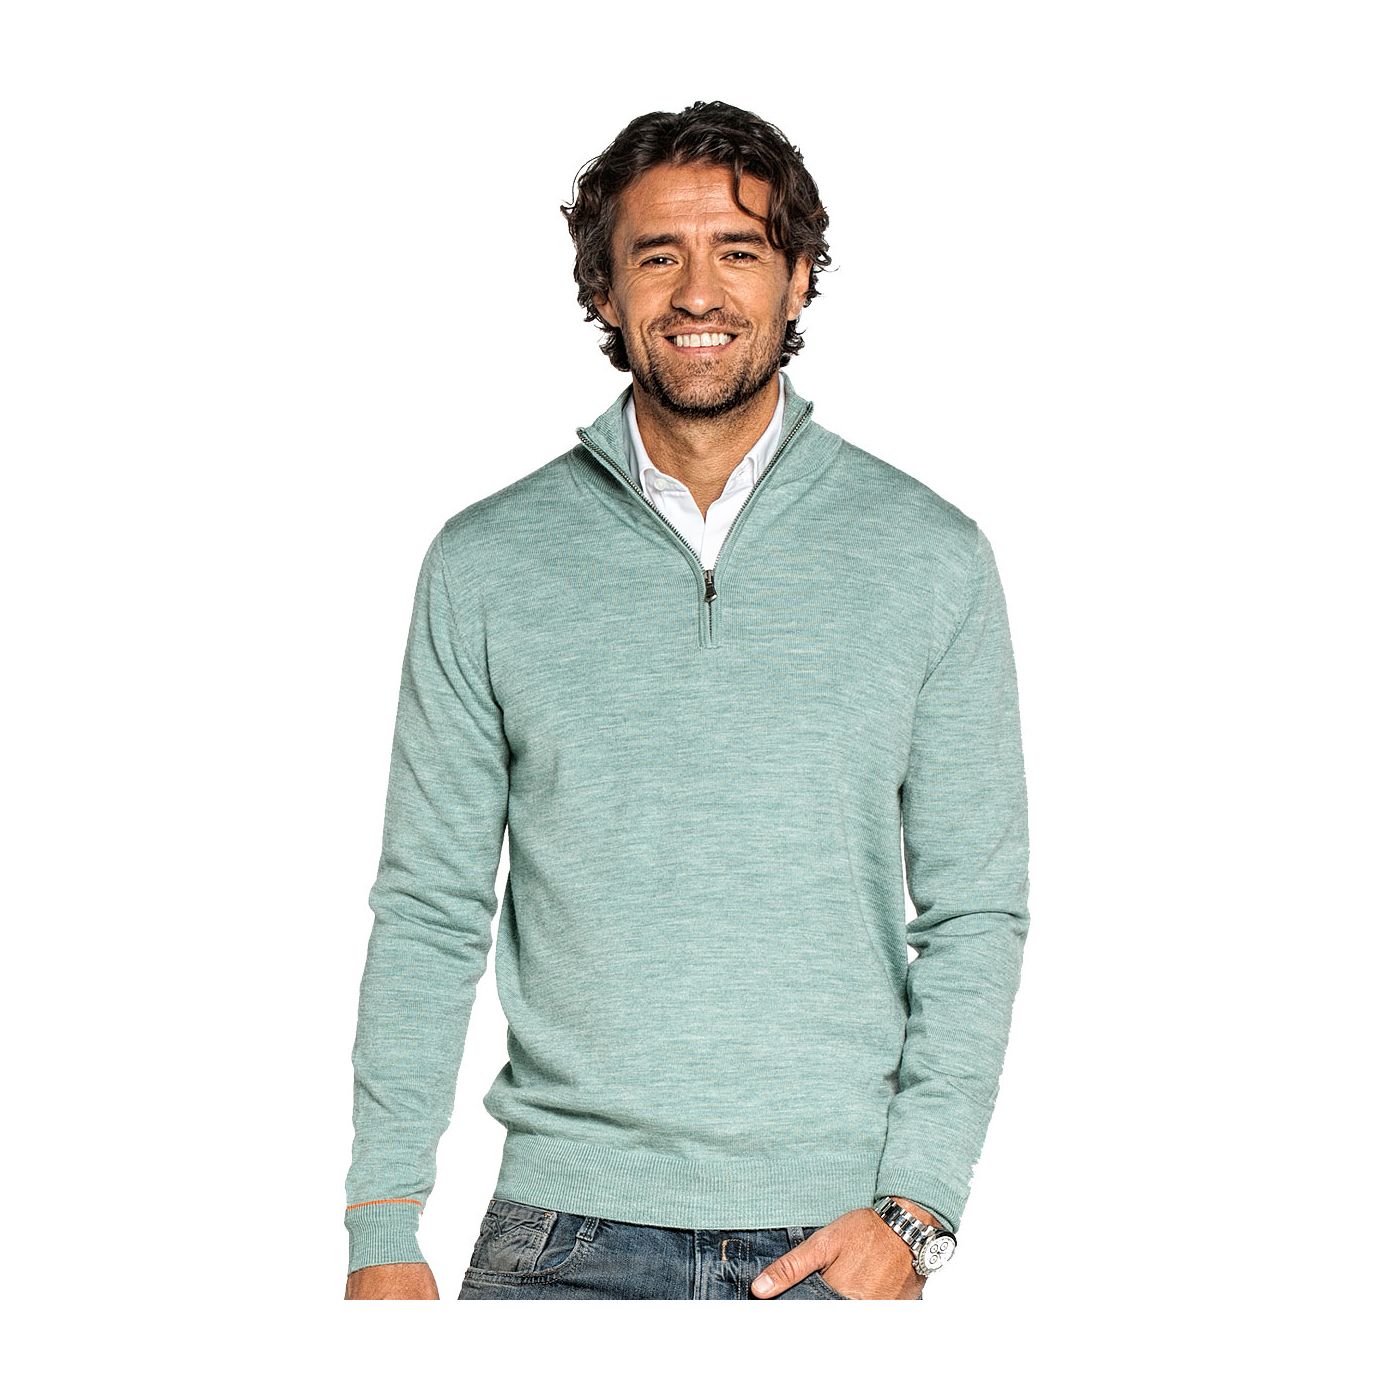 Half zip sweater for men made of Merino wool in Light green